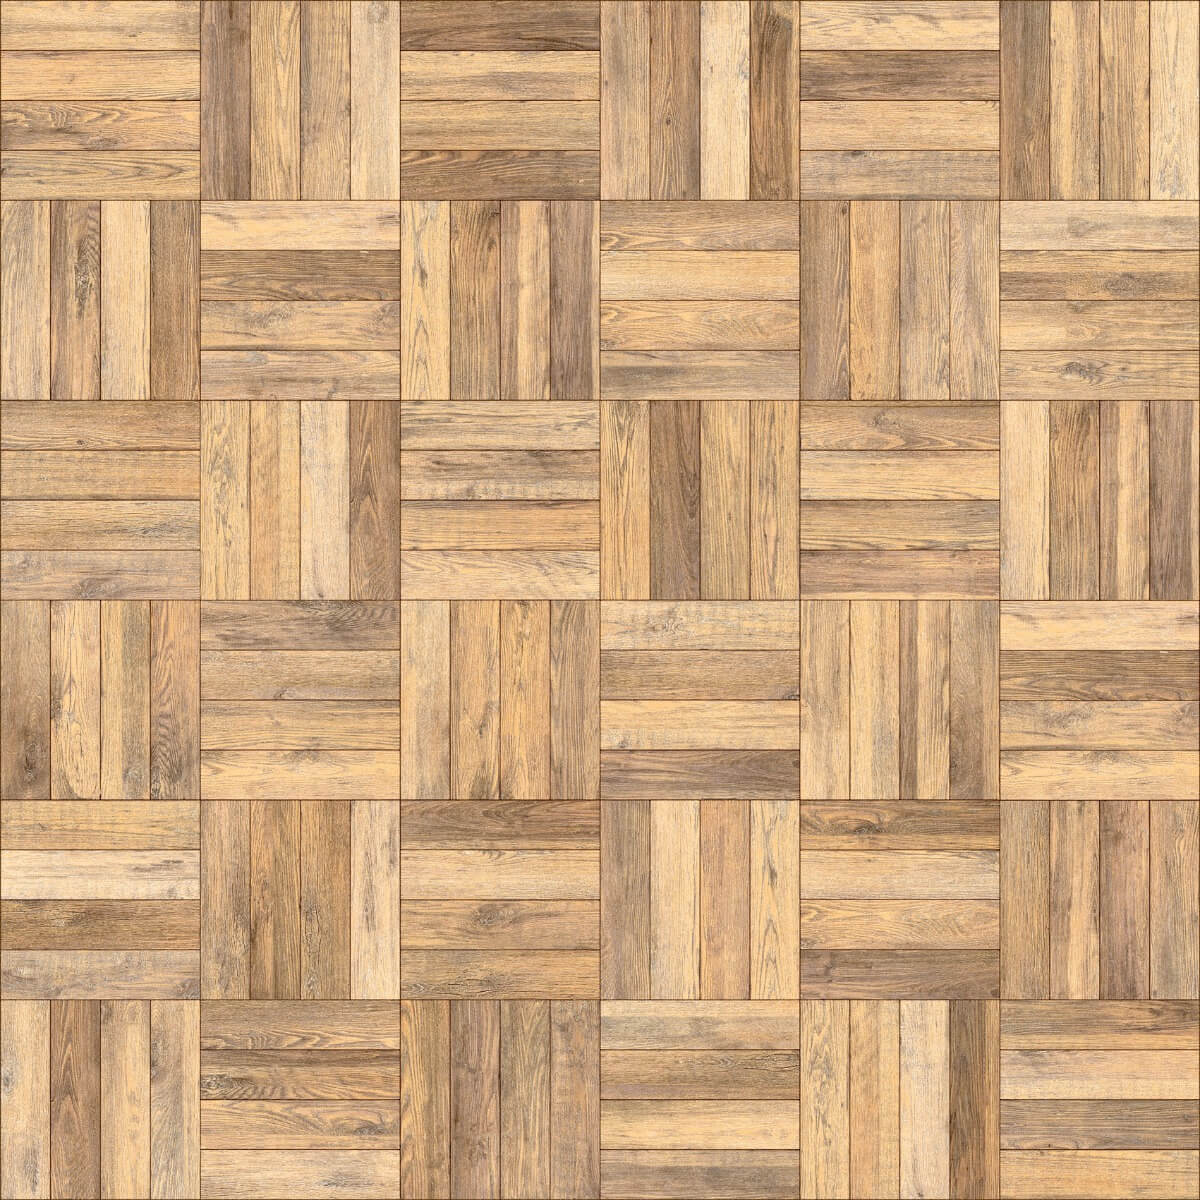 Forever Tiles for Bar/Restaurant